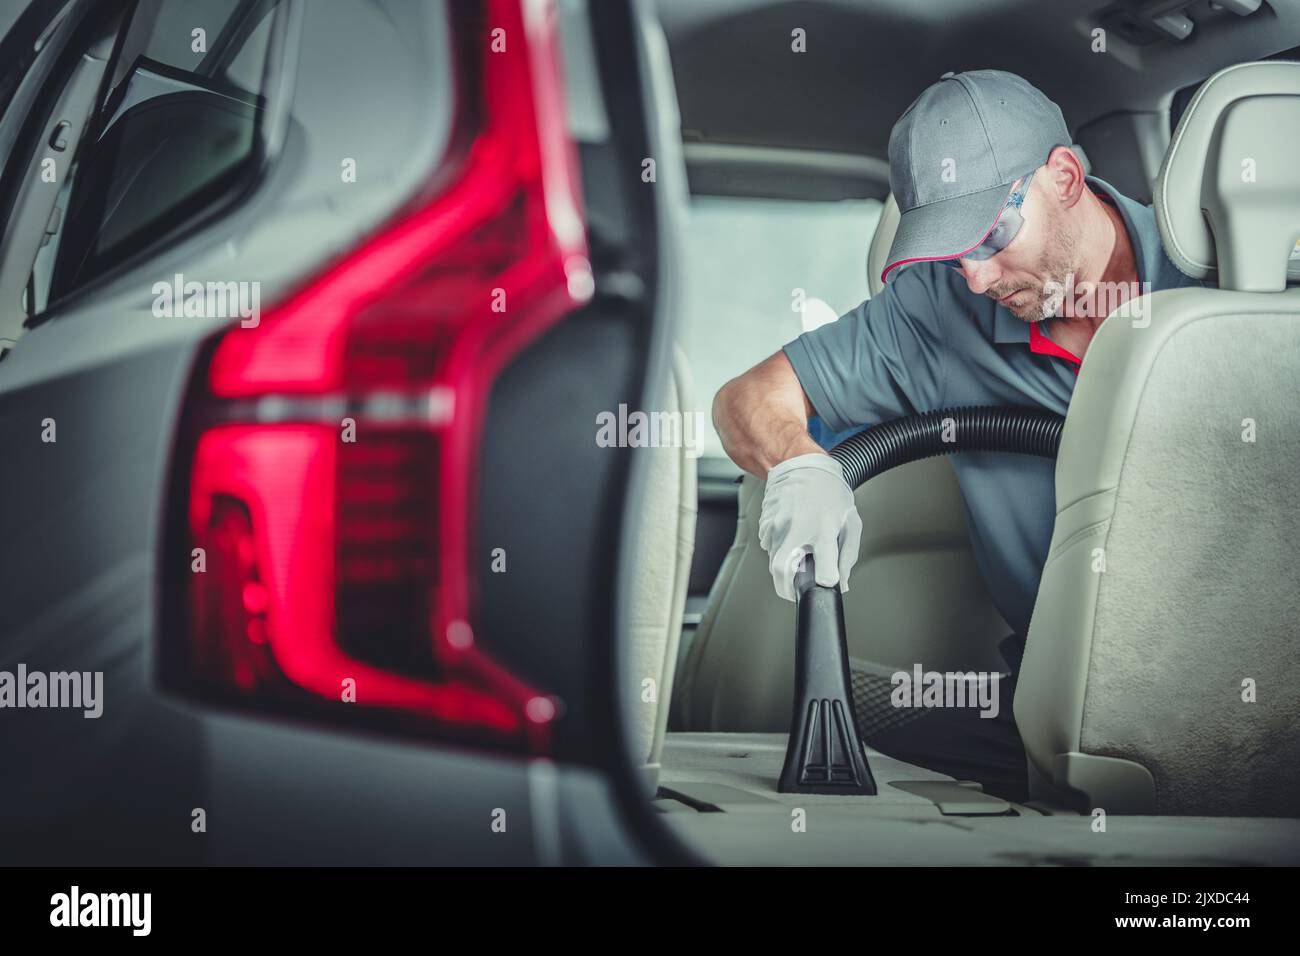 Le détaleur automatique caucasien aspire avec précision les sièges arrière rabattus pendant le service de nettoyage intérieur de véhicule de qualité supérieure. Banque D'Images